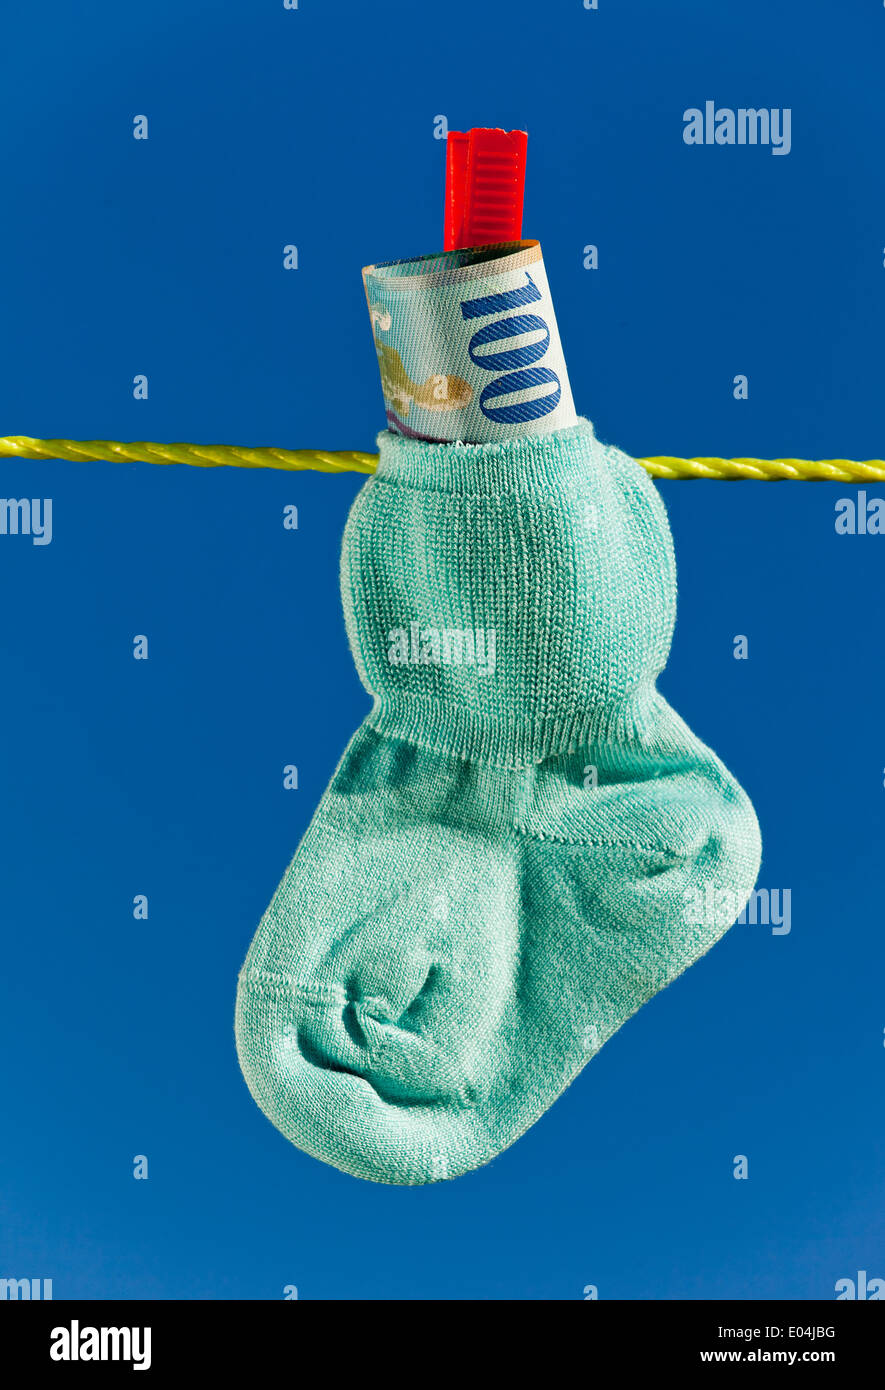 Baby socks on clothesline with Swiss franc. Blue sky., Baby Socken auf  Waescheleine mit Schweizer Franken. Blauer Himmel Stock Photo - Alamy